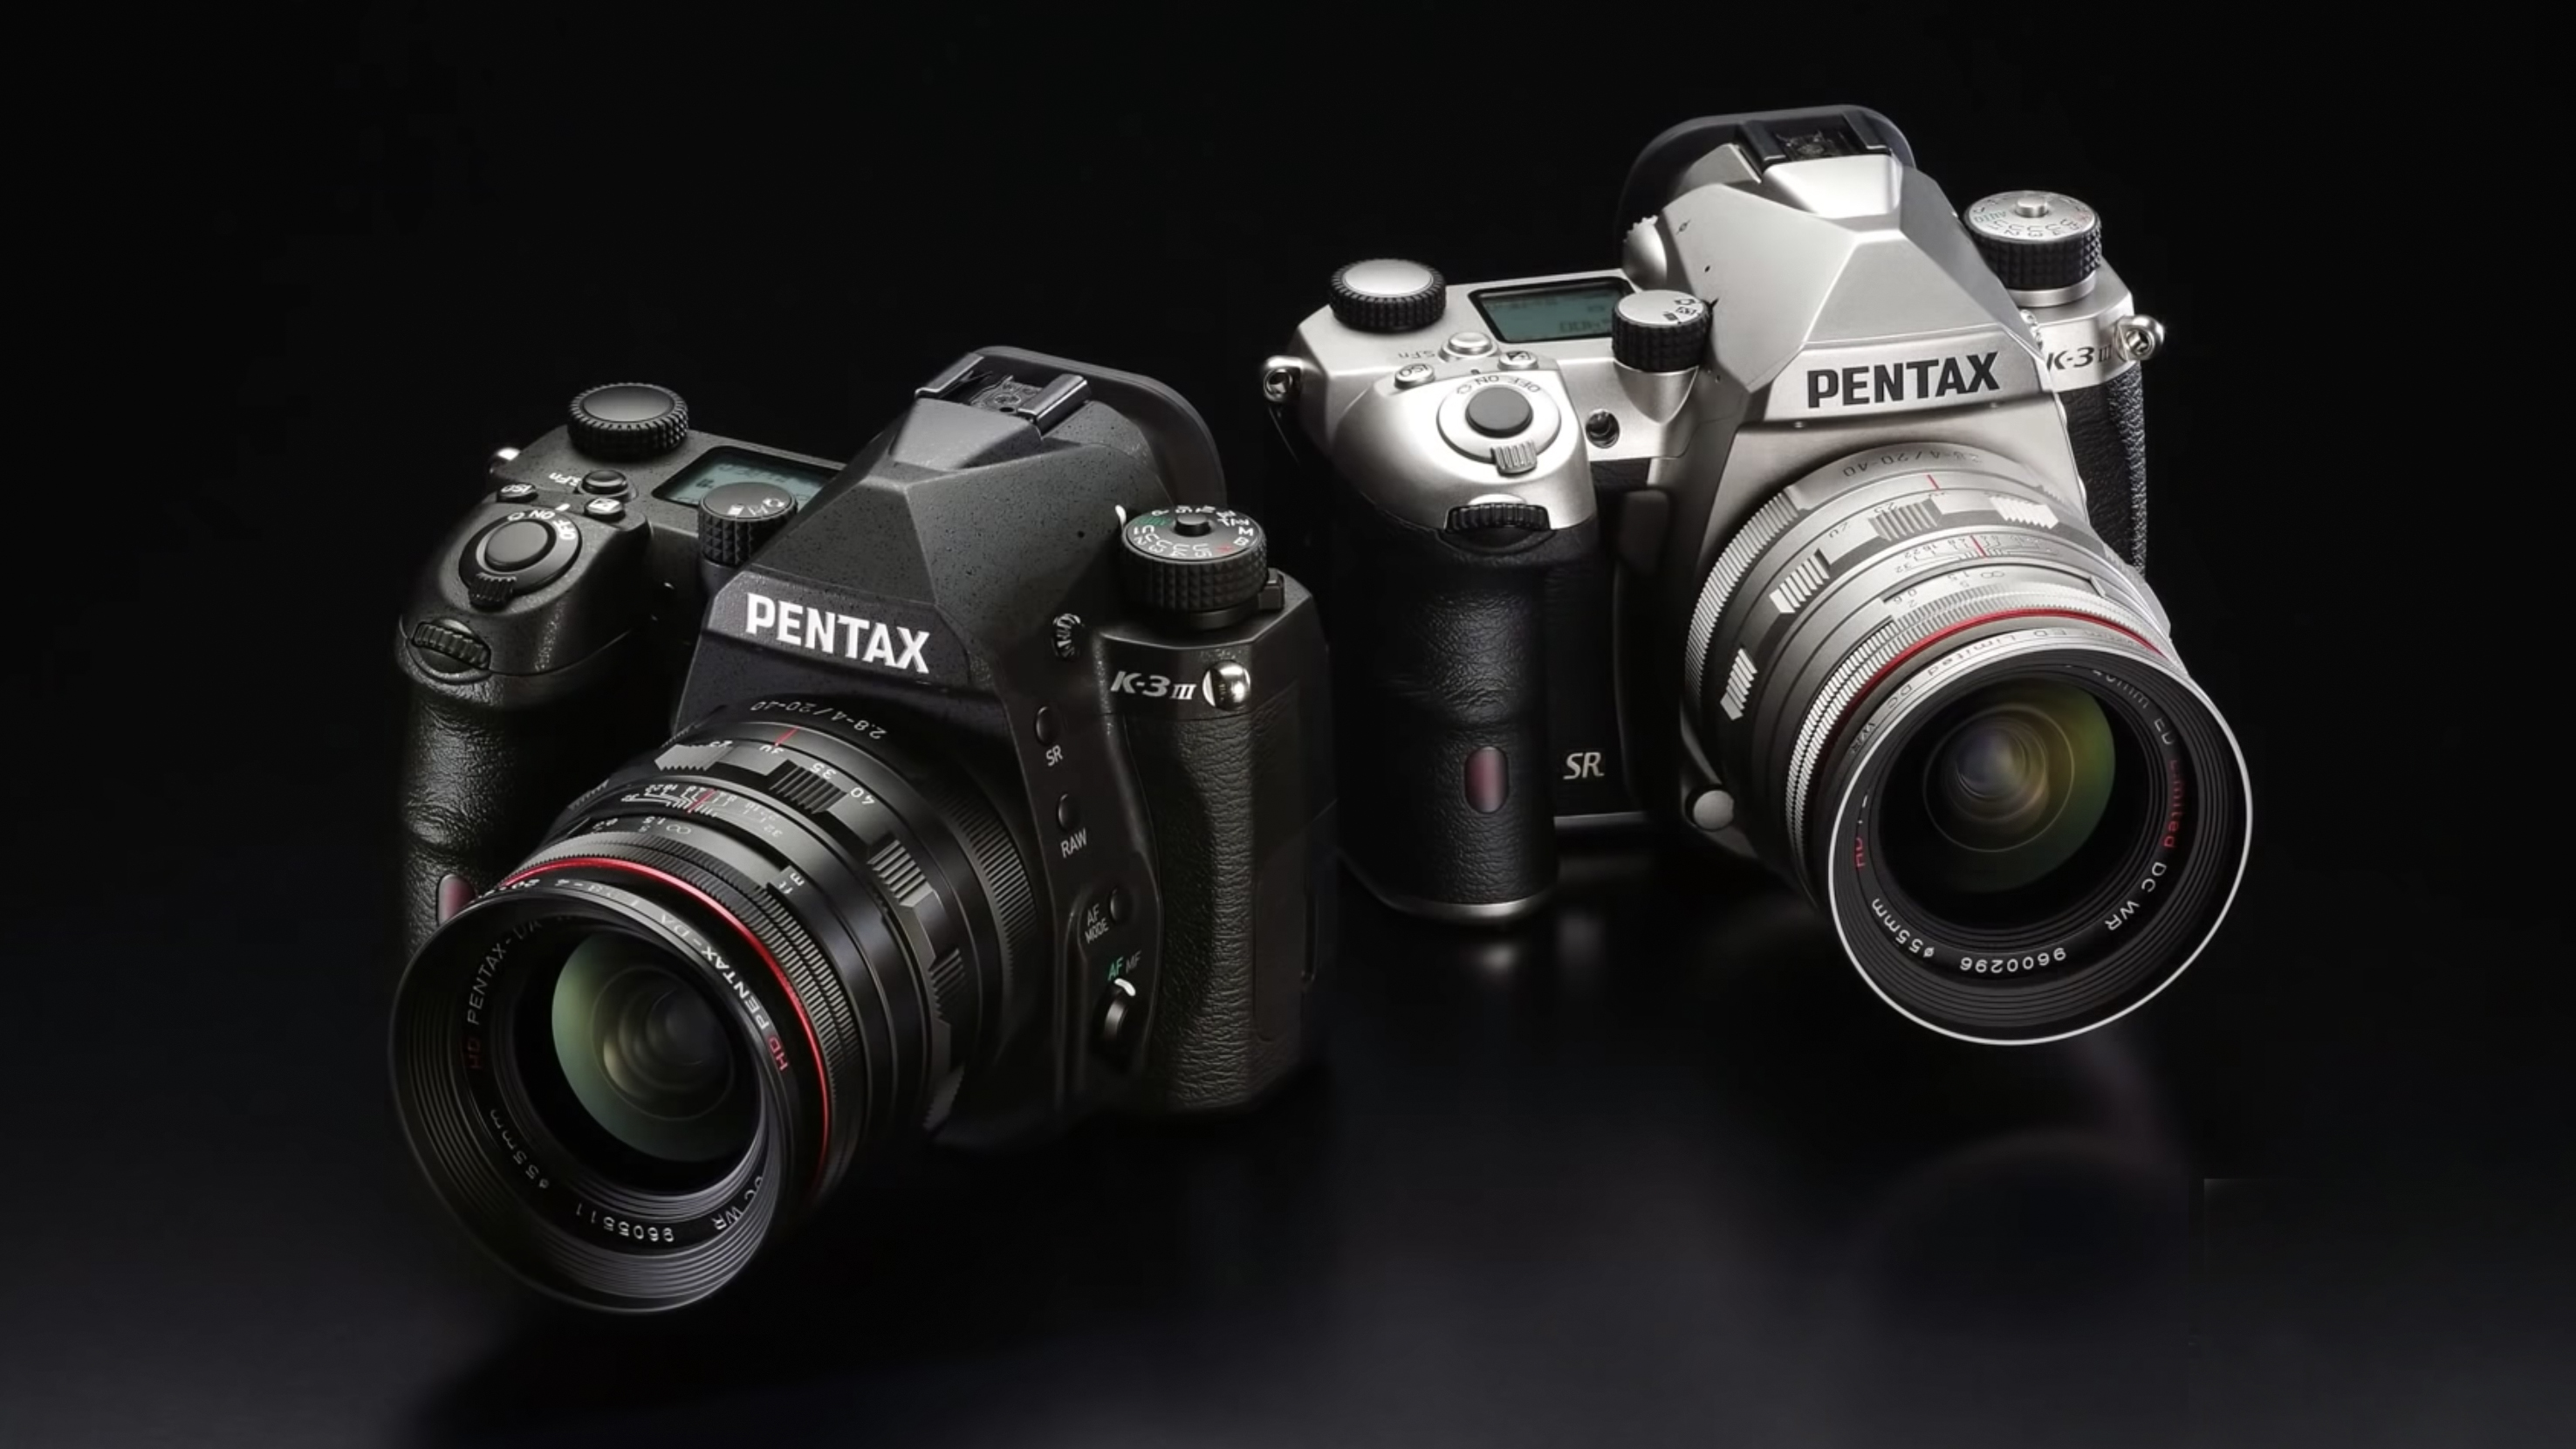 Pentax K-3 Mark III set to be released next week (finally!) | Digital